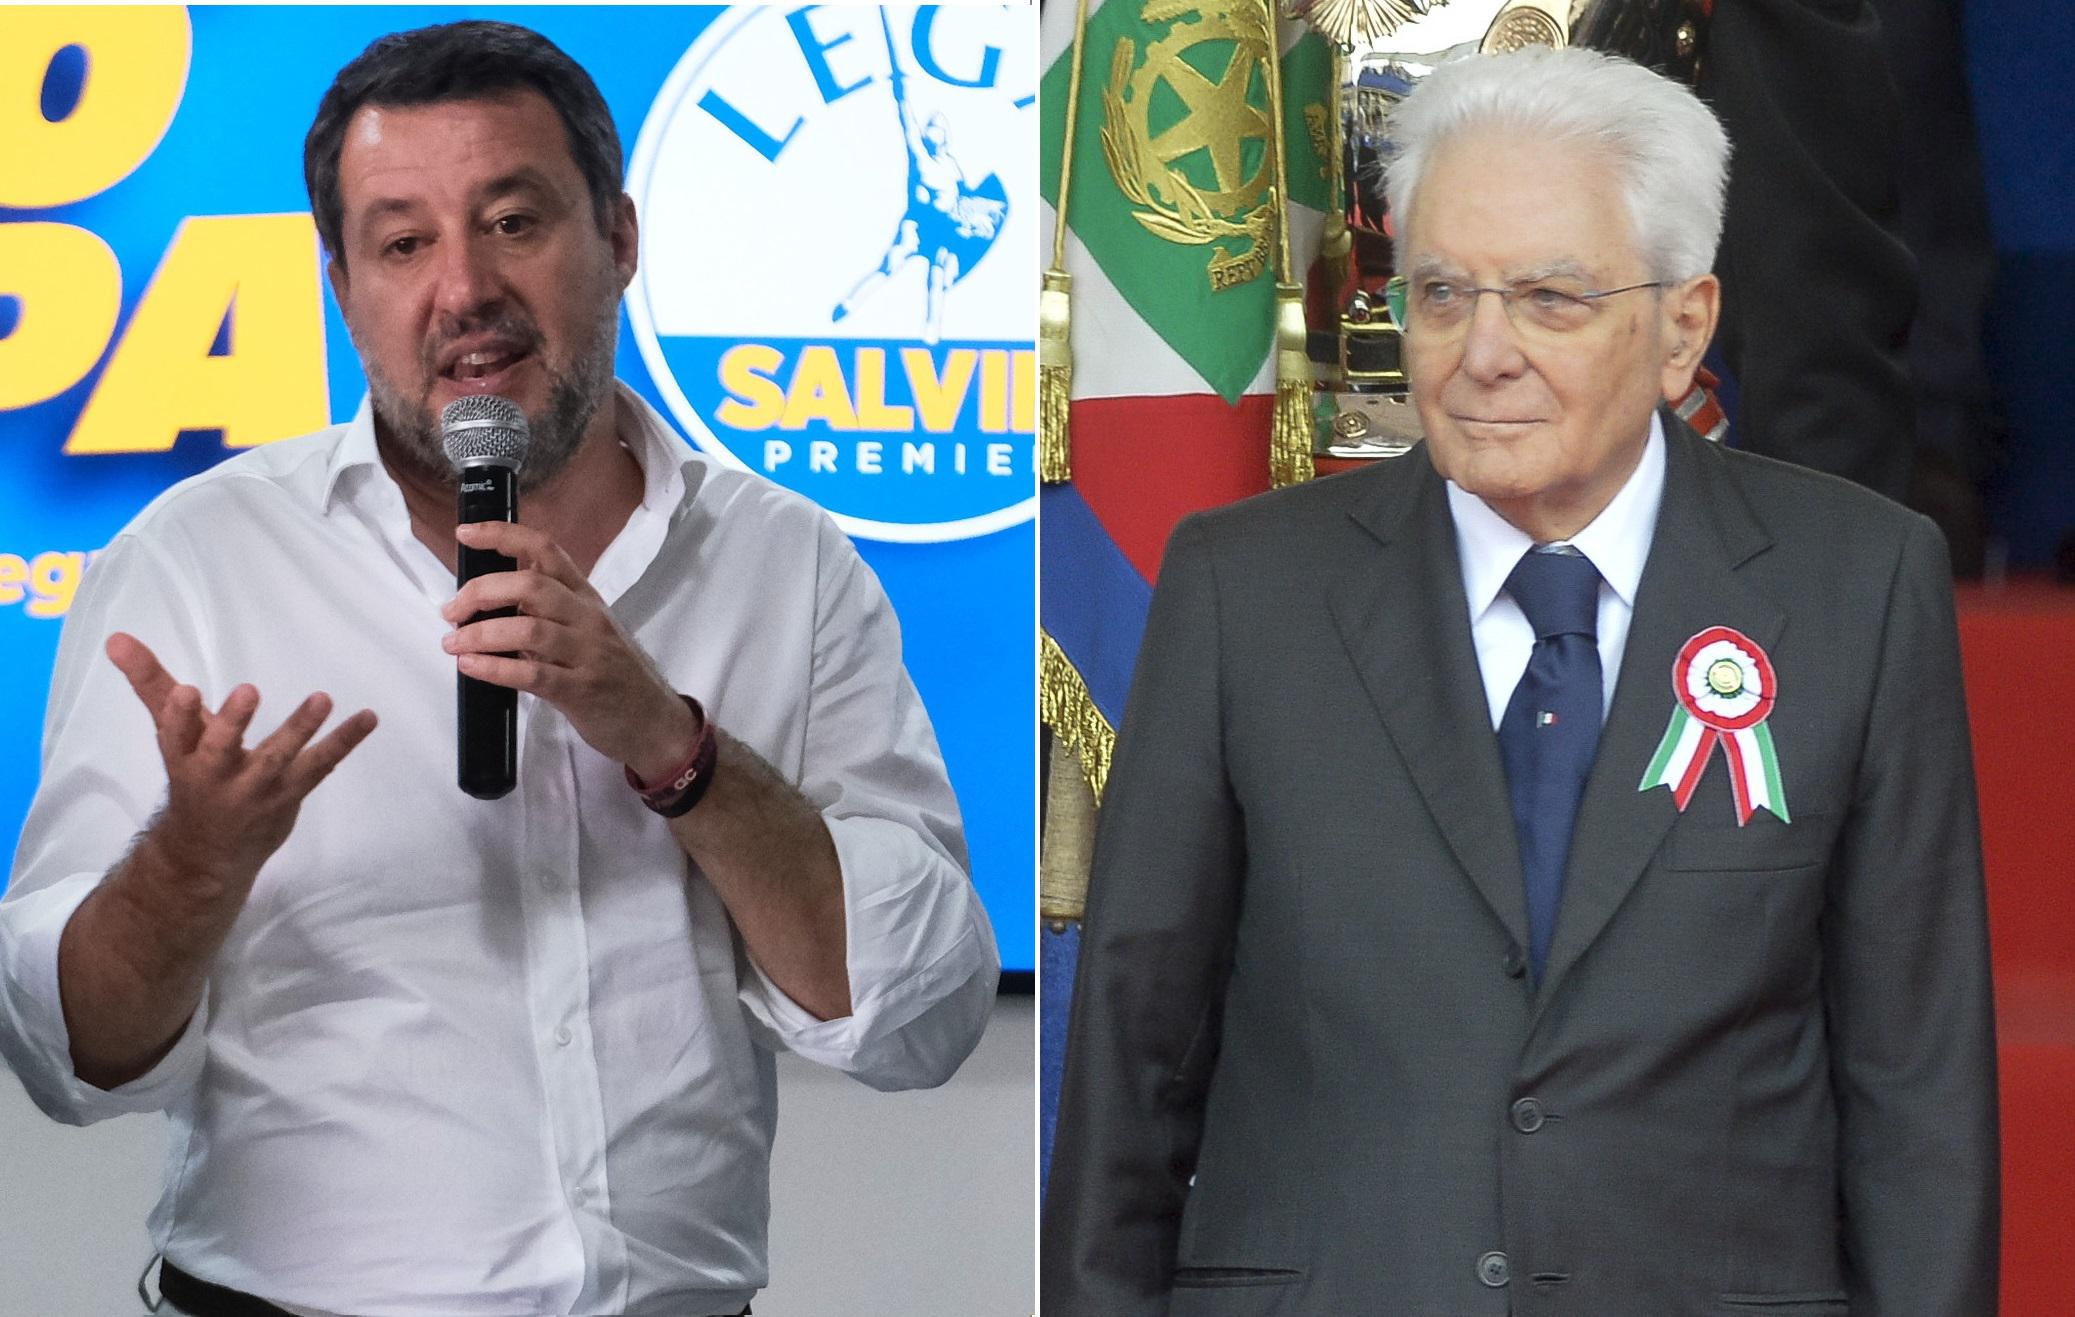 Επίθεση της Λέγκα κατά του Προέδρου της Ιταλικής Δημοκρατίας Σέρτζιο Ματαρέλα για την «ευρωπαϊκή κυριαρχία»